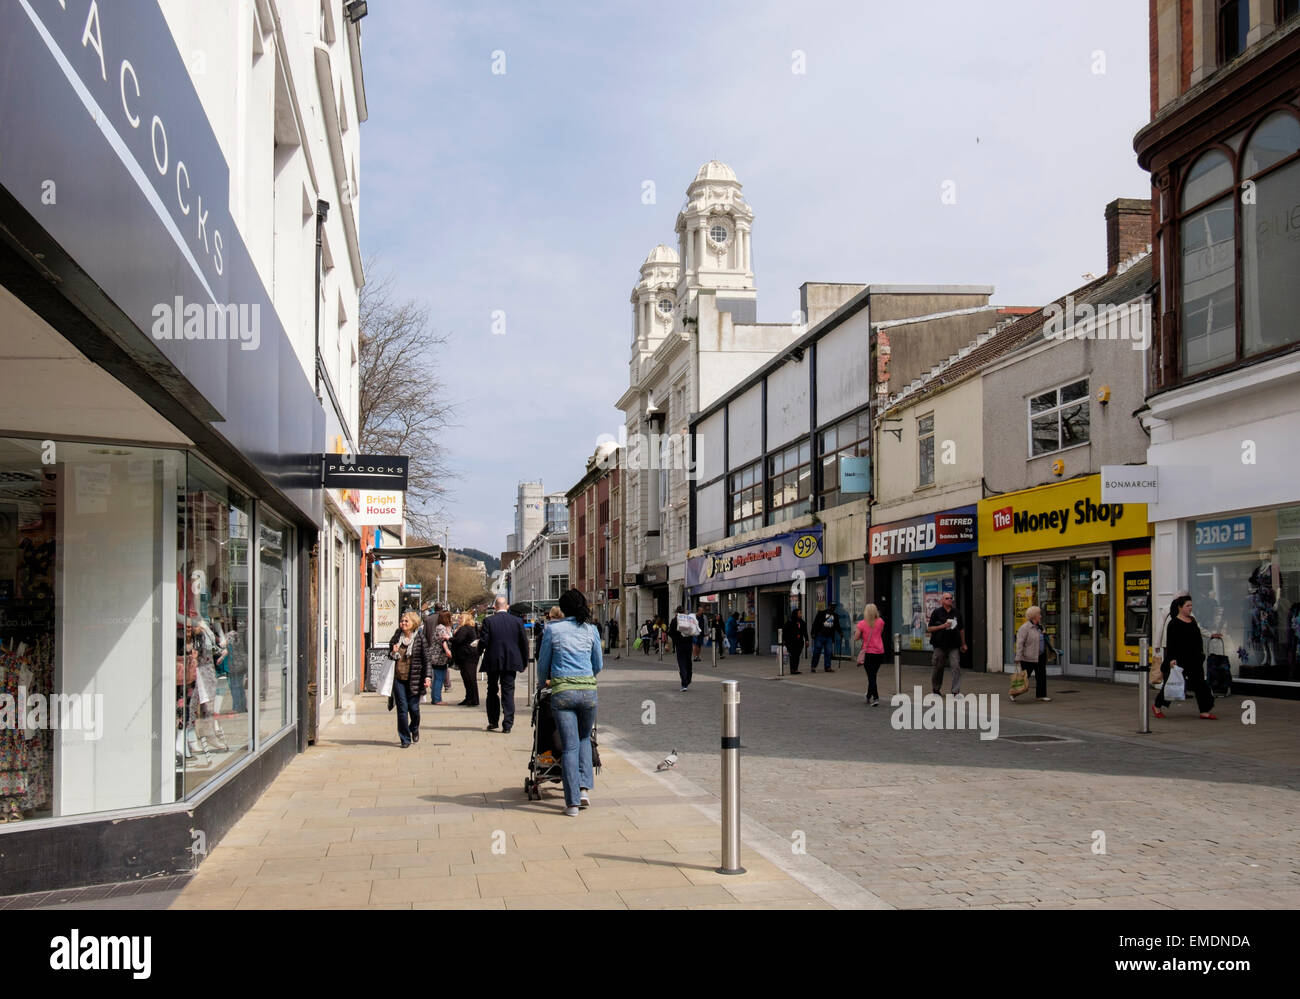 Centre-ville, boutiques et shoppers dans Oxford Street piétonne, Swansea, West Glamorgan, Pays de Galles, Royaume-Uni, Angleterre Banque D'Images